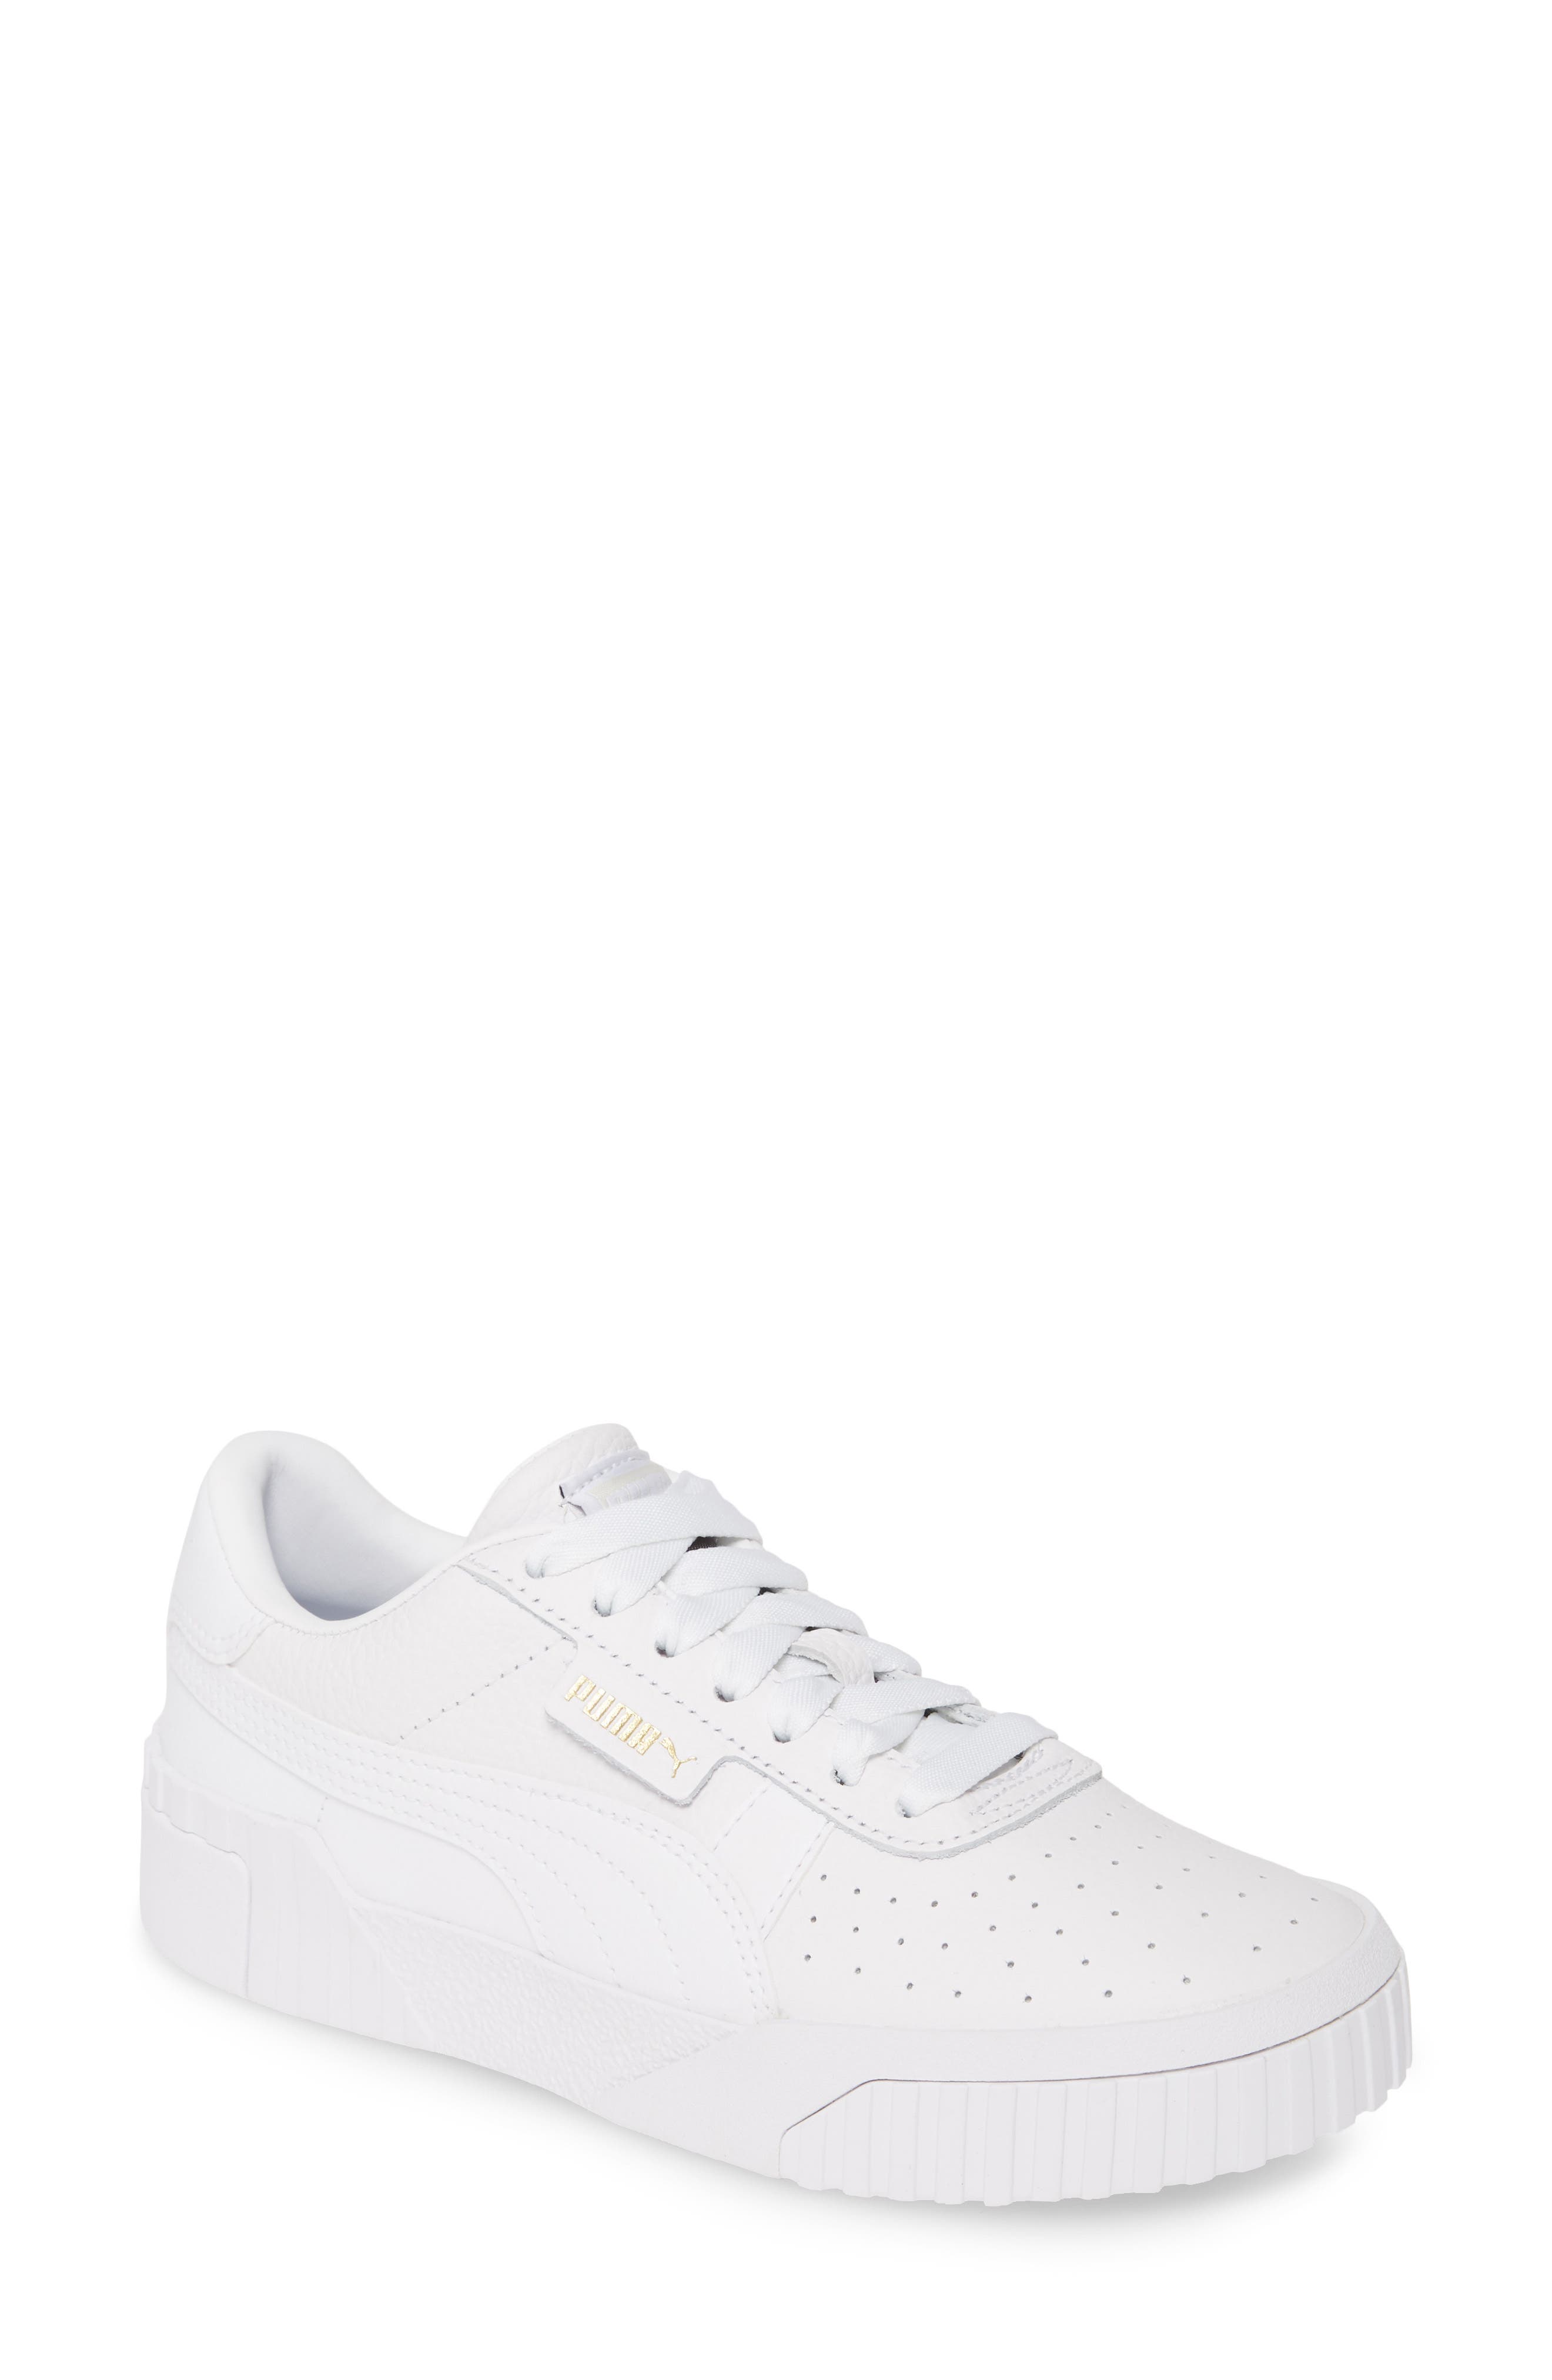 puma sneakers white